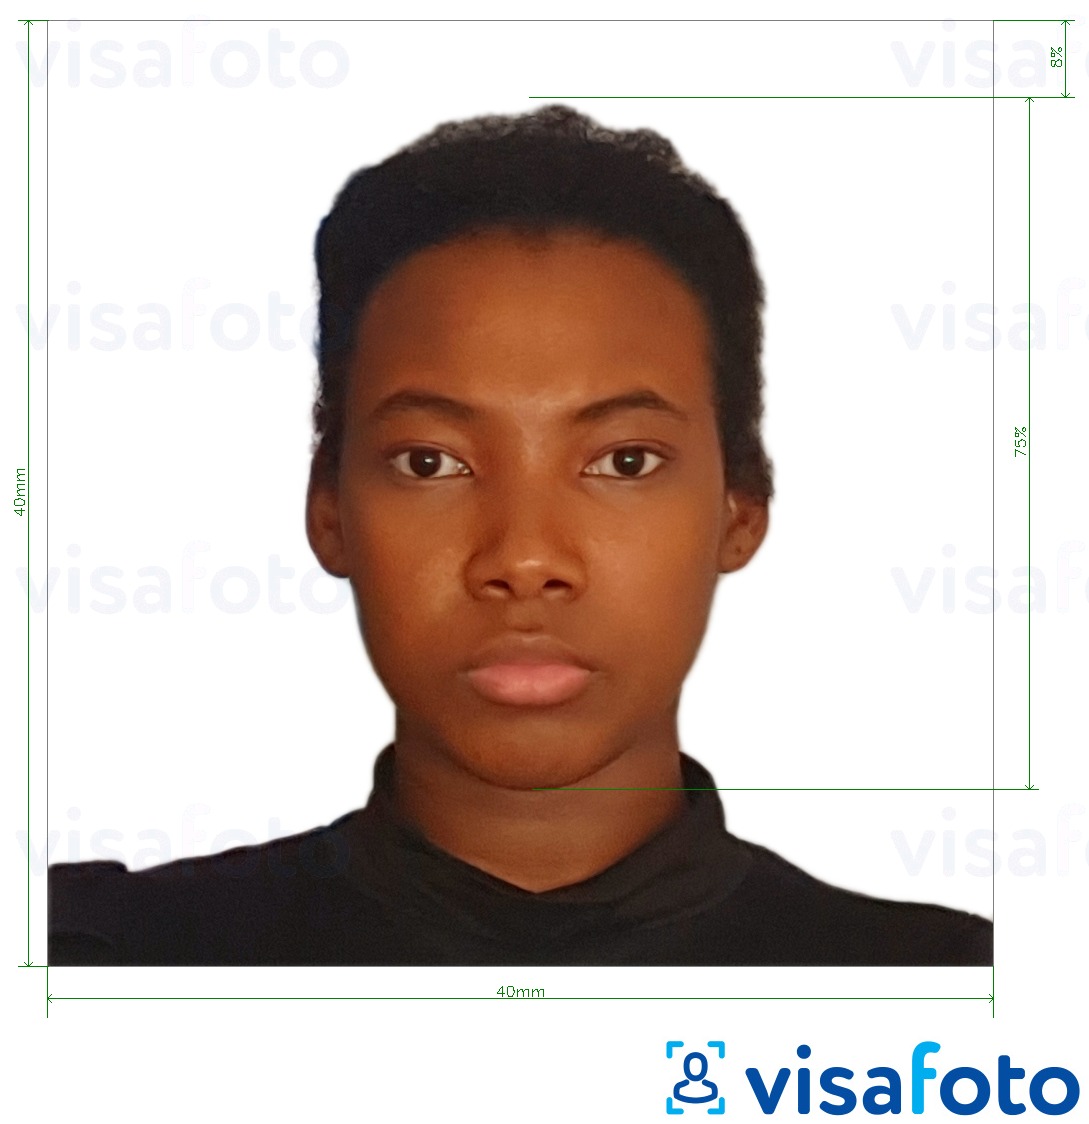 Contoh dari foto untuk Paspor Kamerun 4x4 cm (40x40 mm) dengan ukuran spesifikasi yang tepat